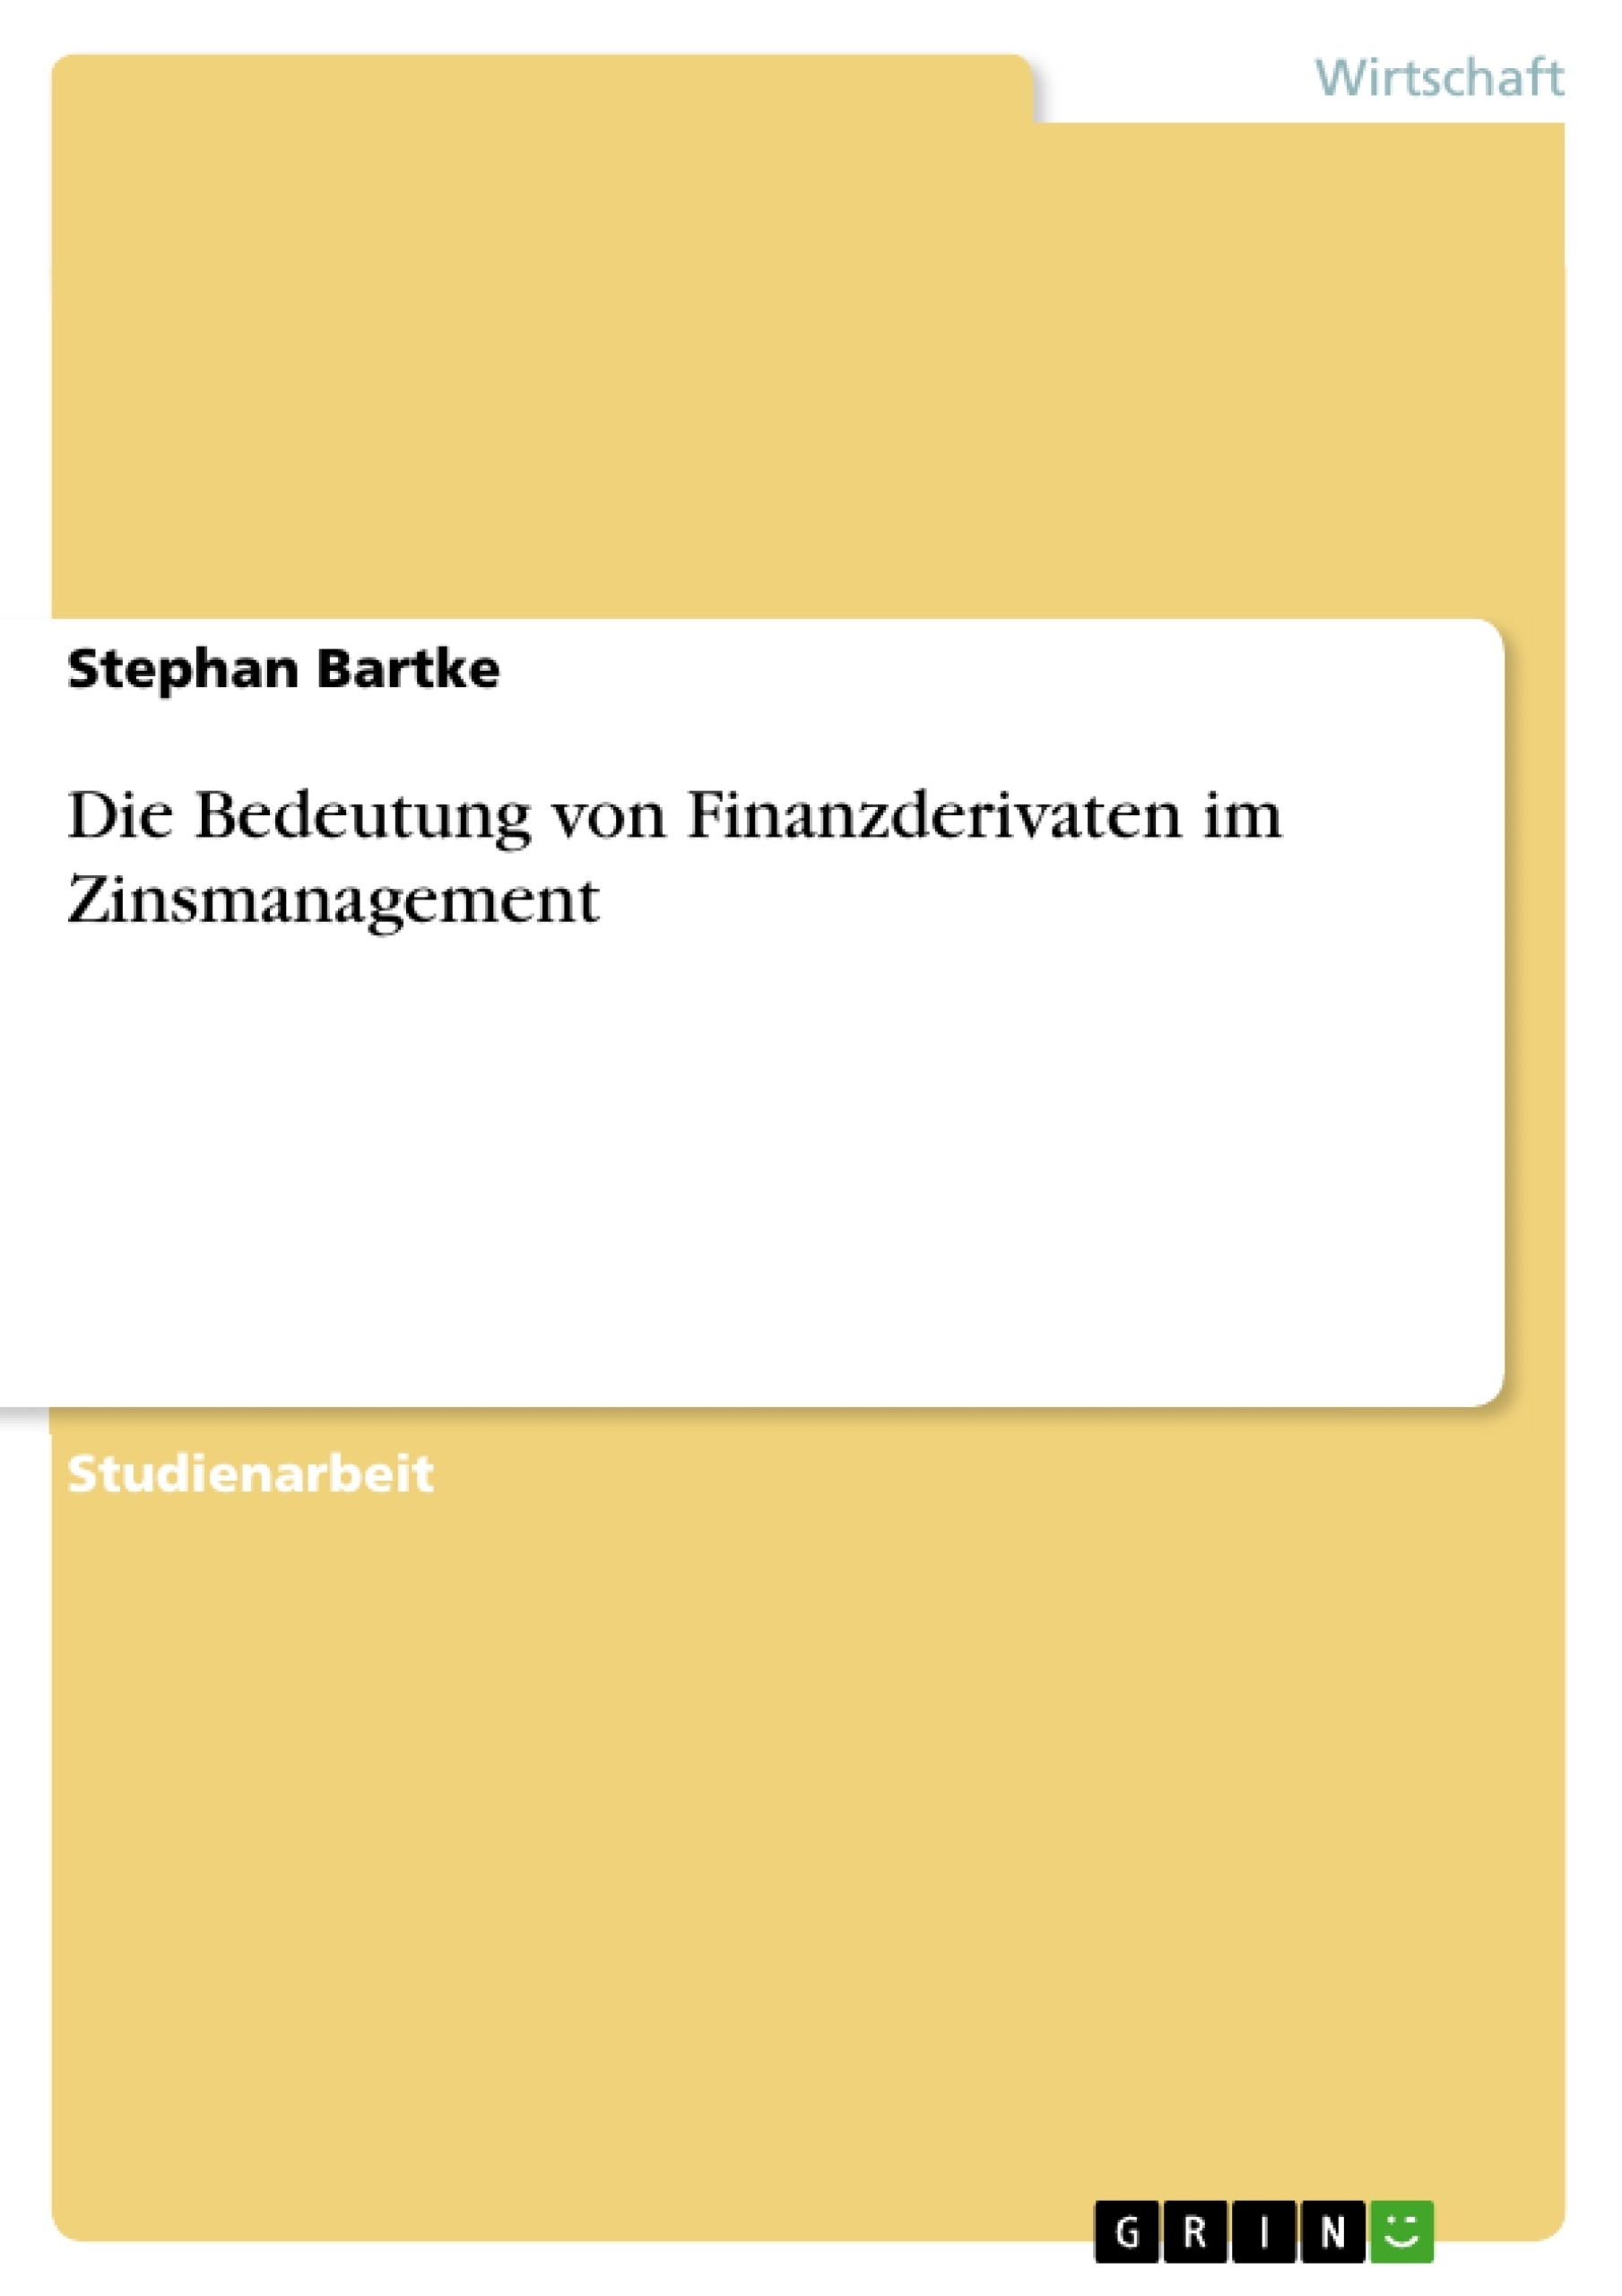 Title: Die Bedeutung von Finanzderivaten im Zinsmanagement